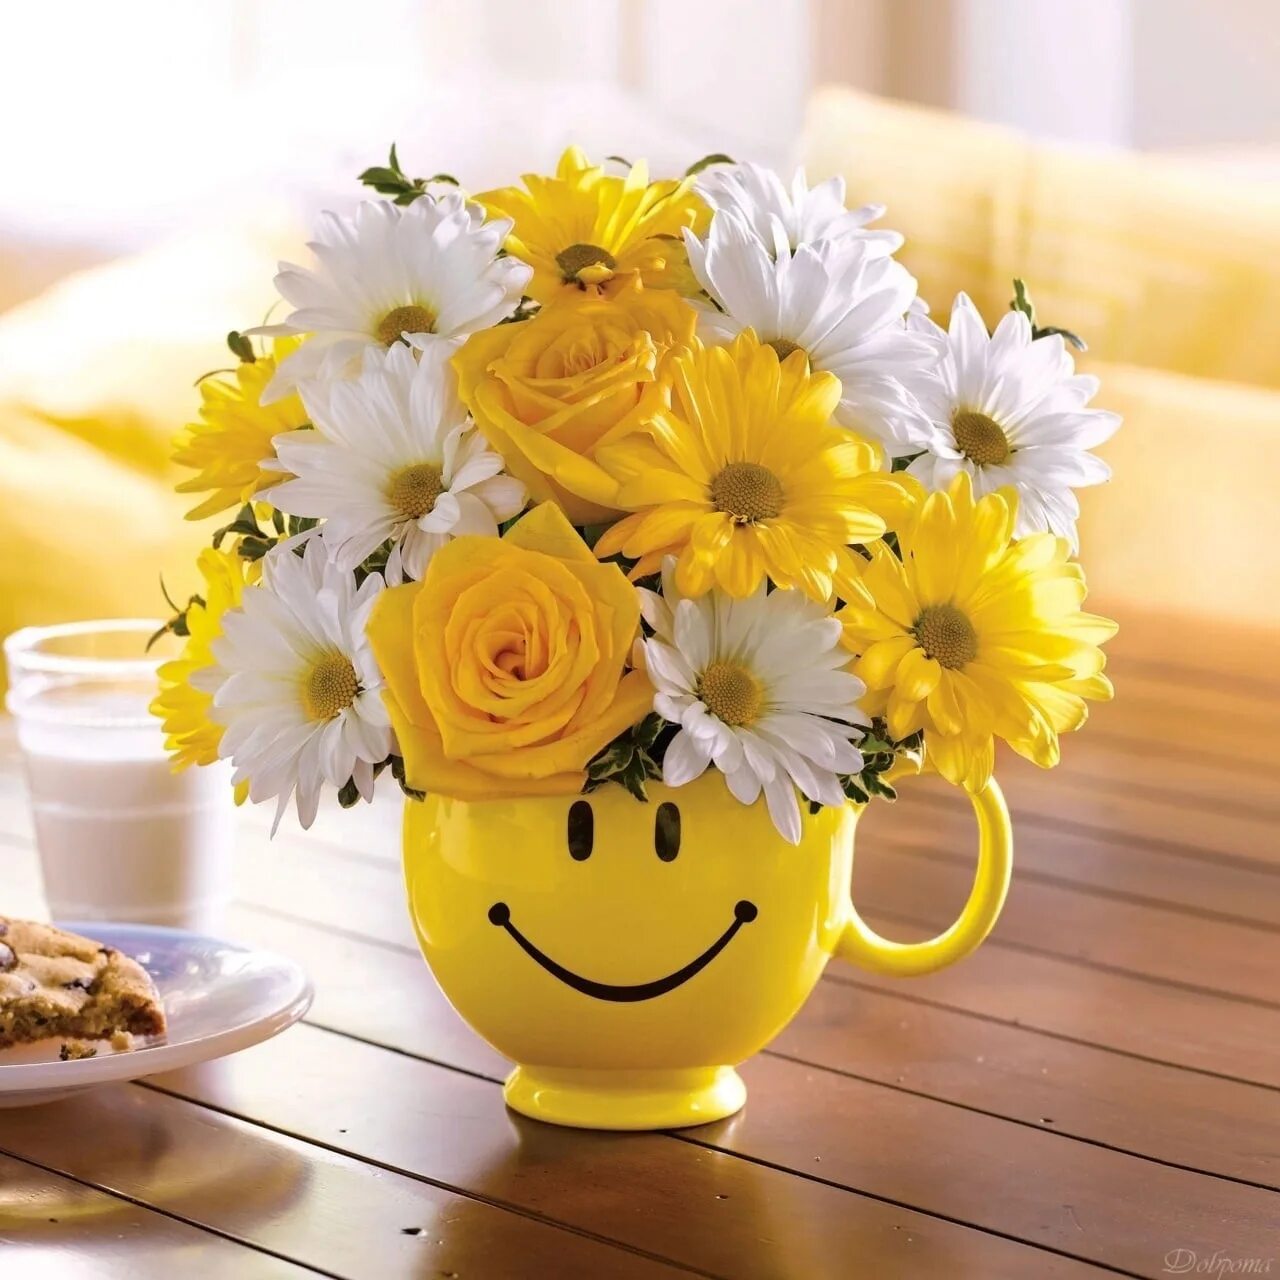 Желтое доброе утро картинки. Доброе утро желтые цветы. Доброе утро в желтом цвете. Утро в желтых тонах. Позитивный букет цветов.